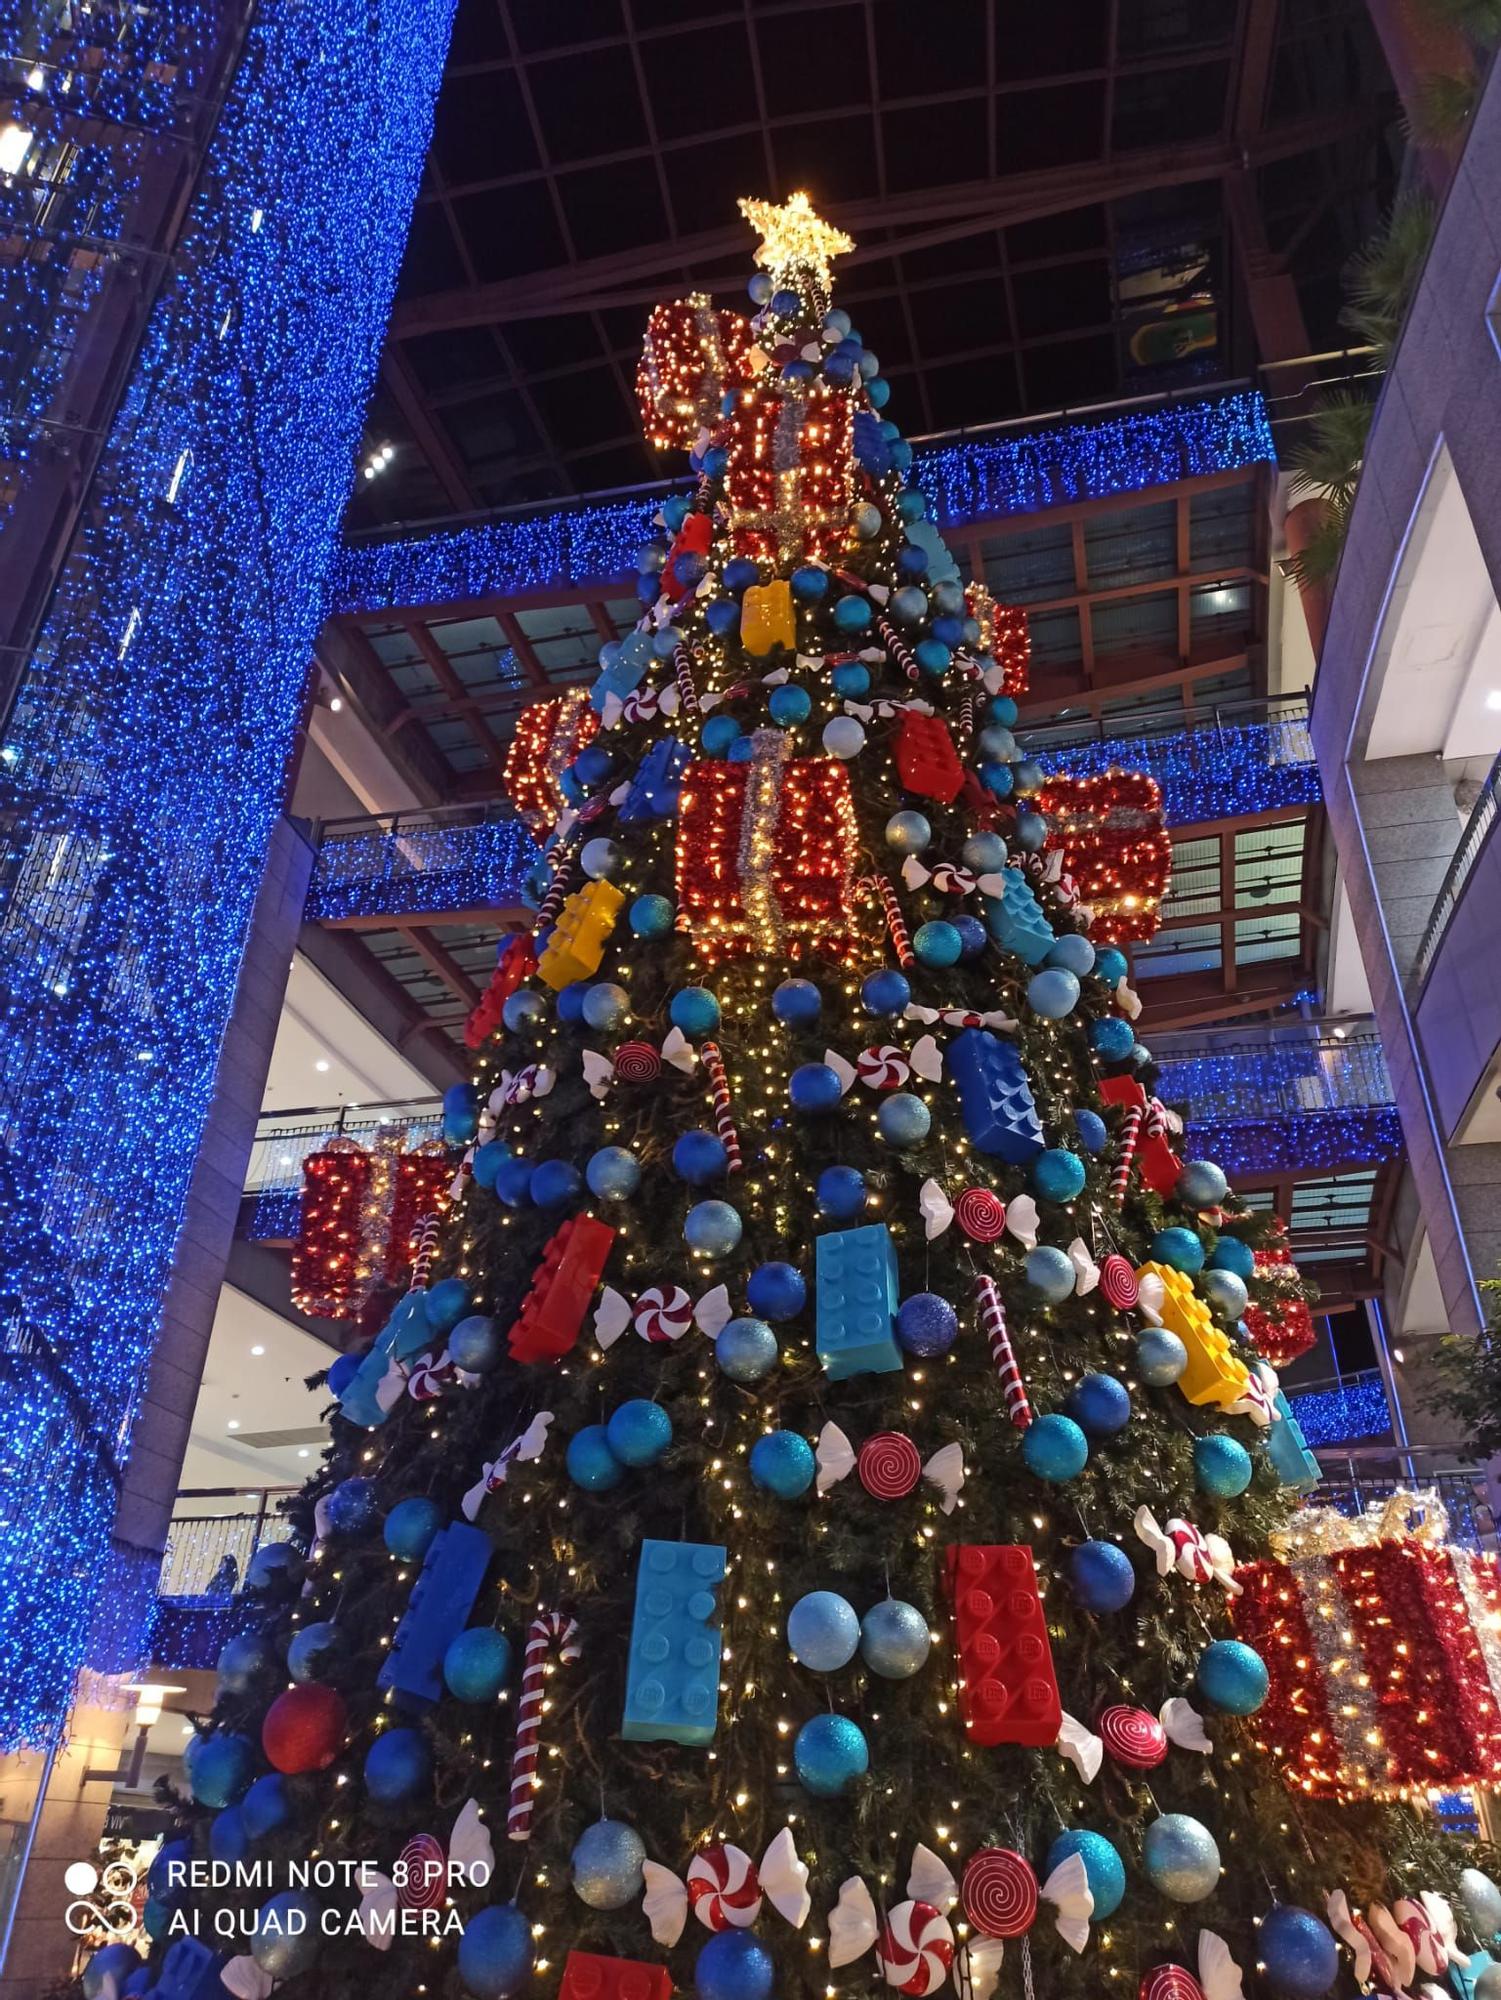 El centro comercial ha instalado un enorme árbol de Navidad.